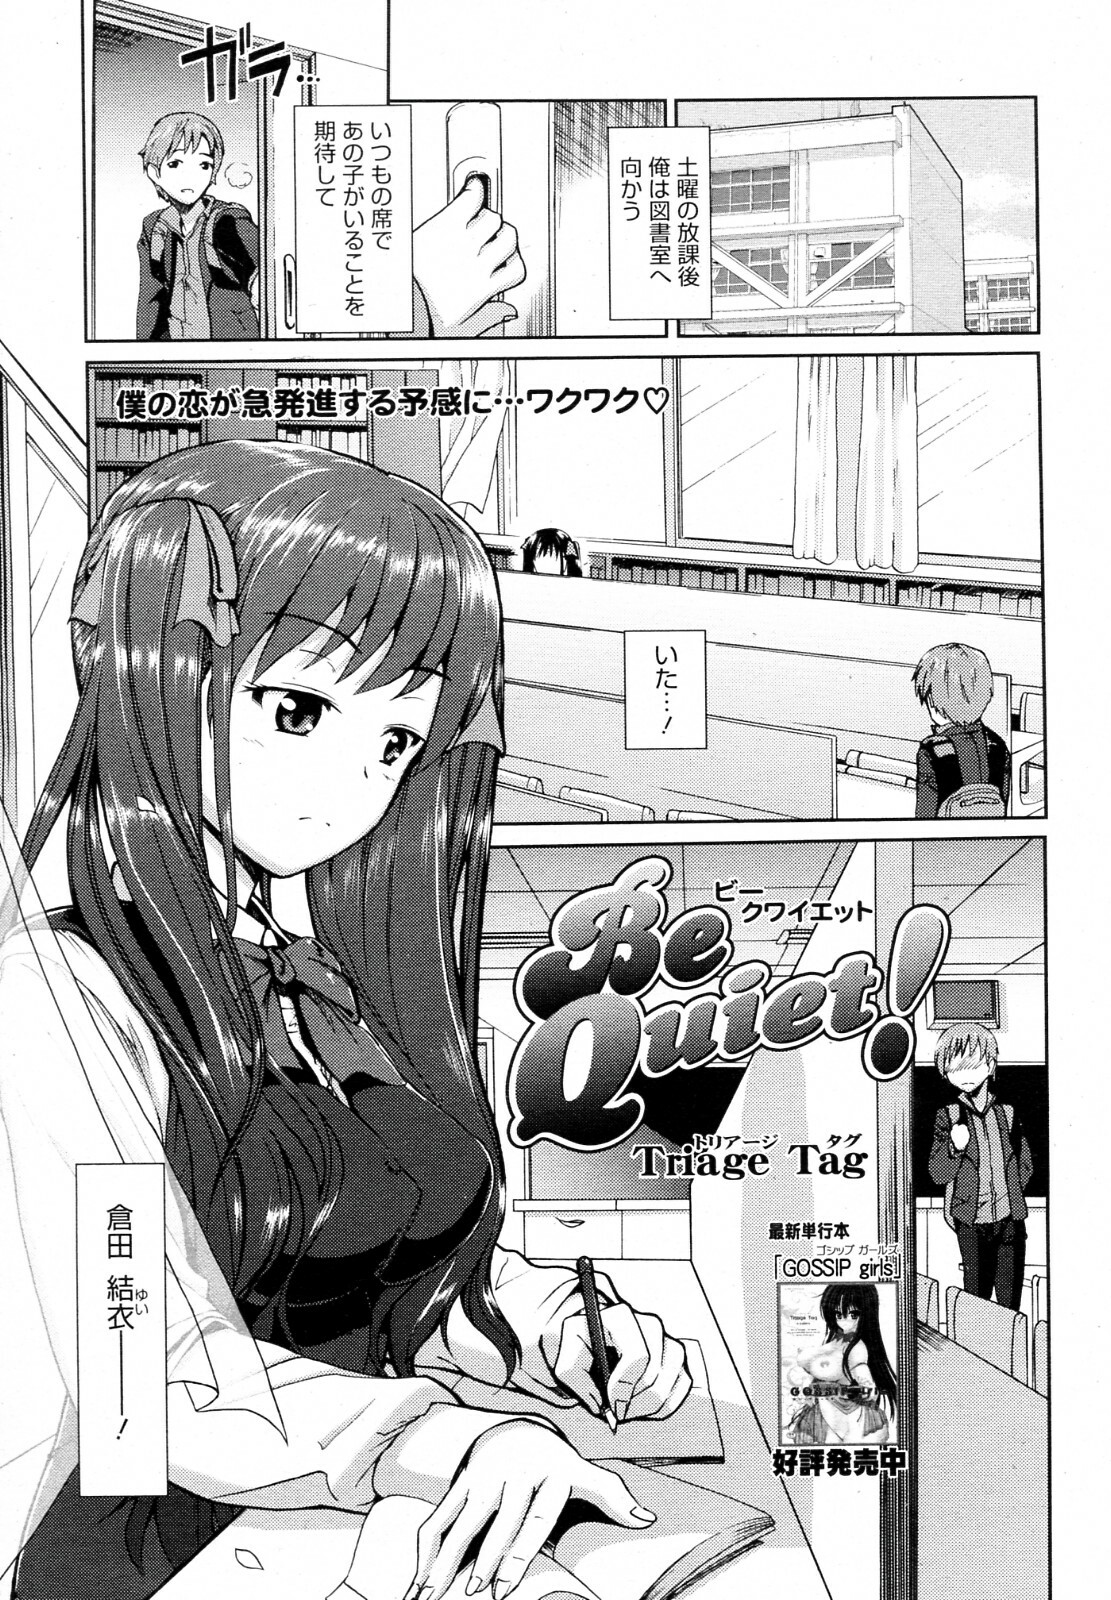 [Triage Tag] Be Quiet! (Manga Bangaichi 2012-07) page 1 full